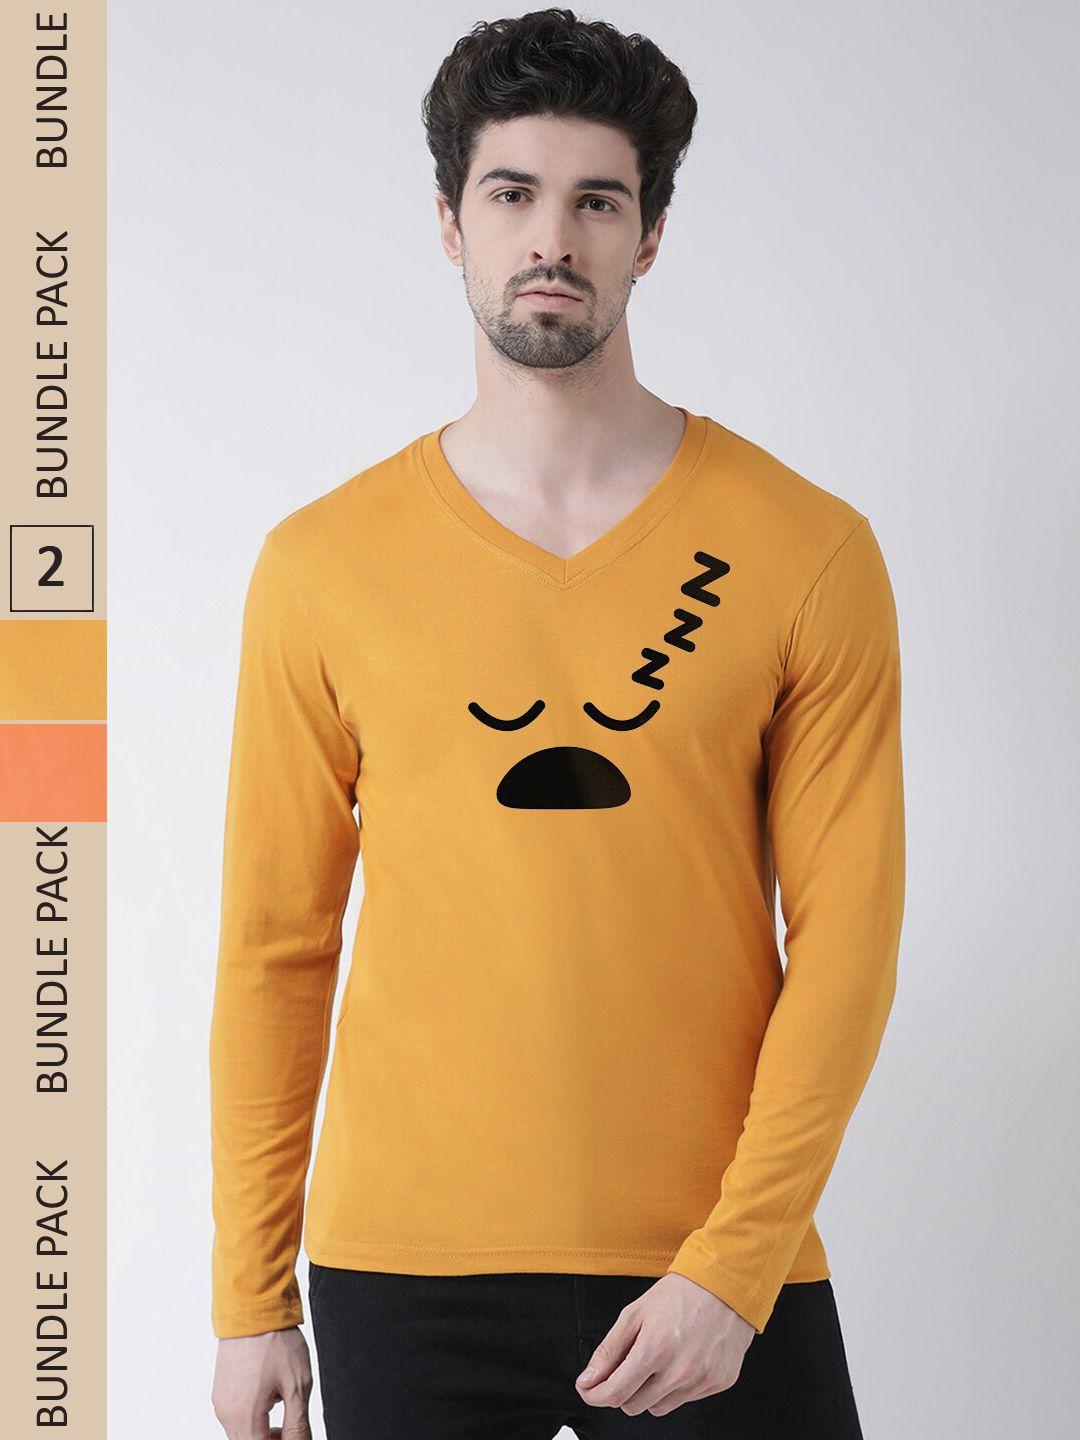 friskers men gold-toned & orange 2 printed v-neck t-shirt